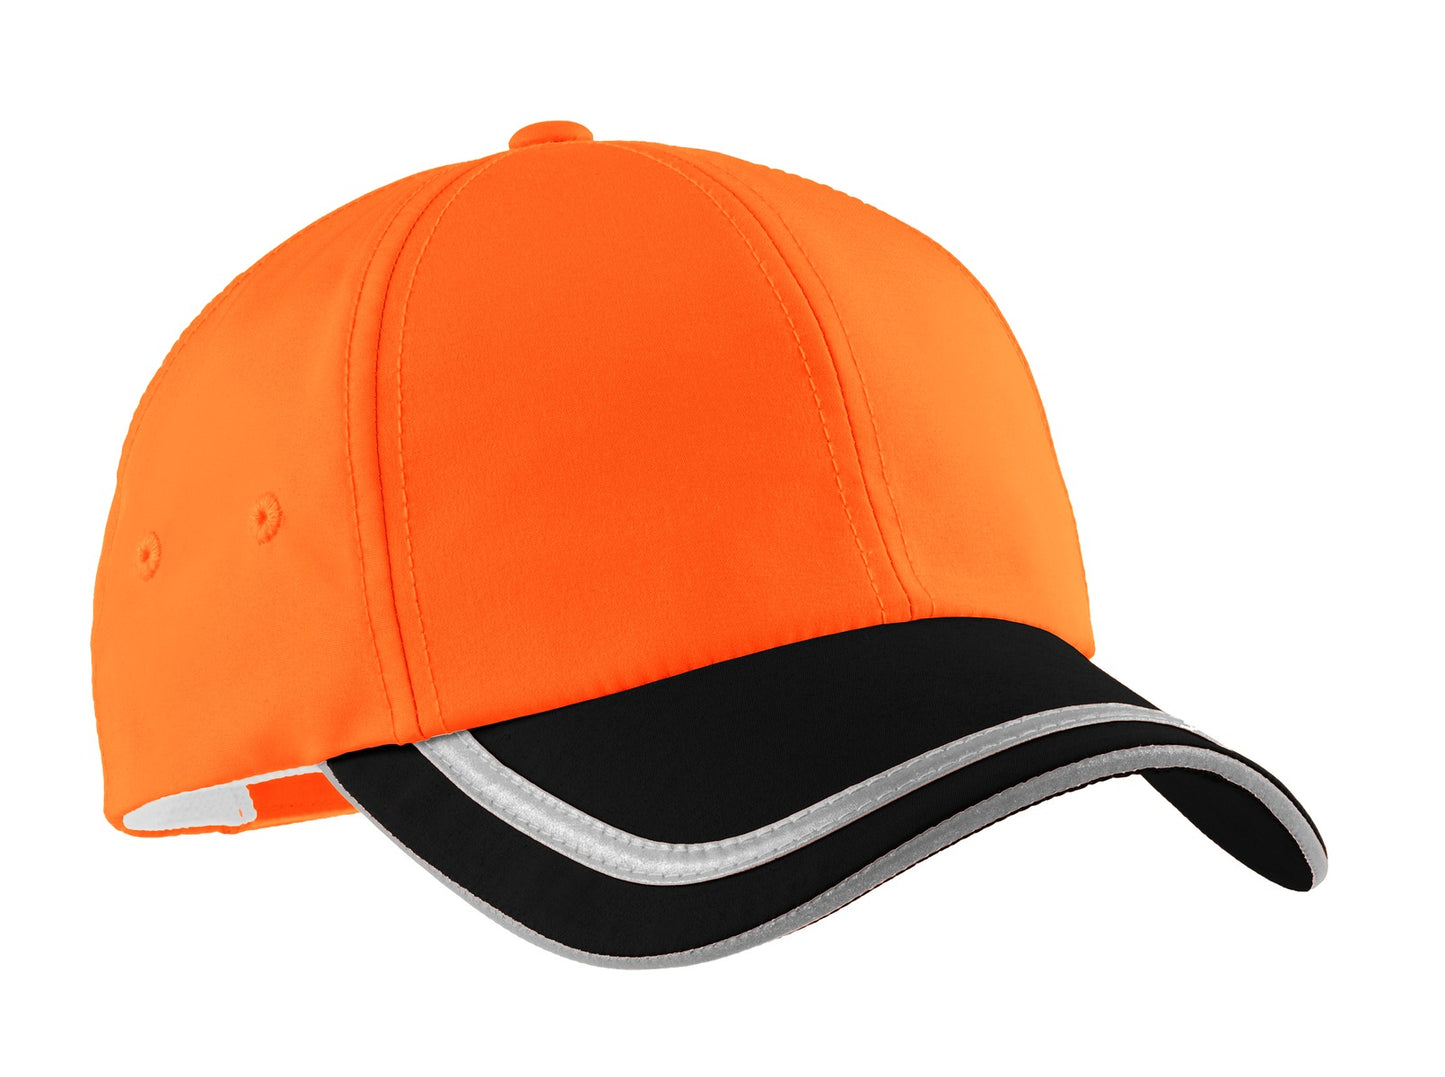 Caps Safety Orange/ Black OSFA Port Authority